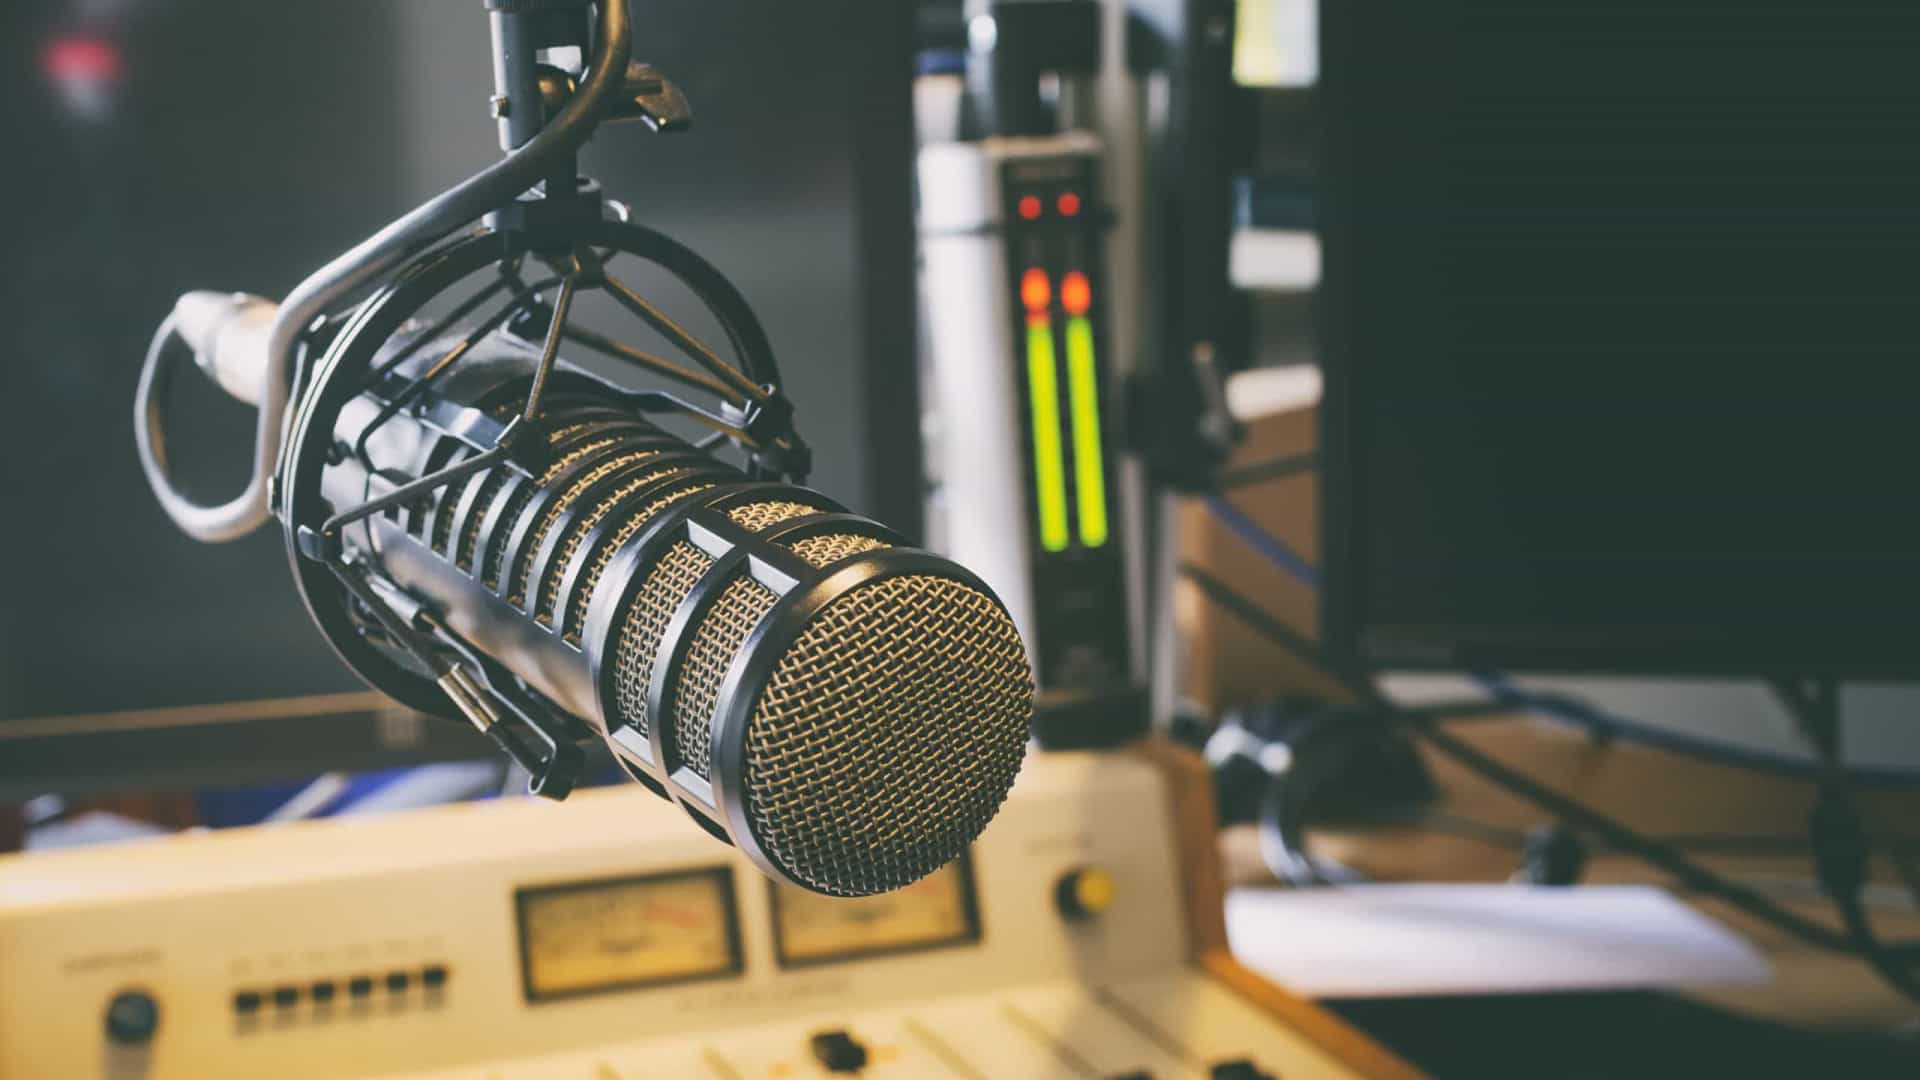 Entenda como os podcasts sustentam o streaming mas abalam guerra às fake news